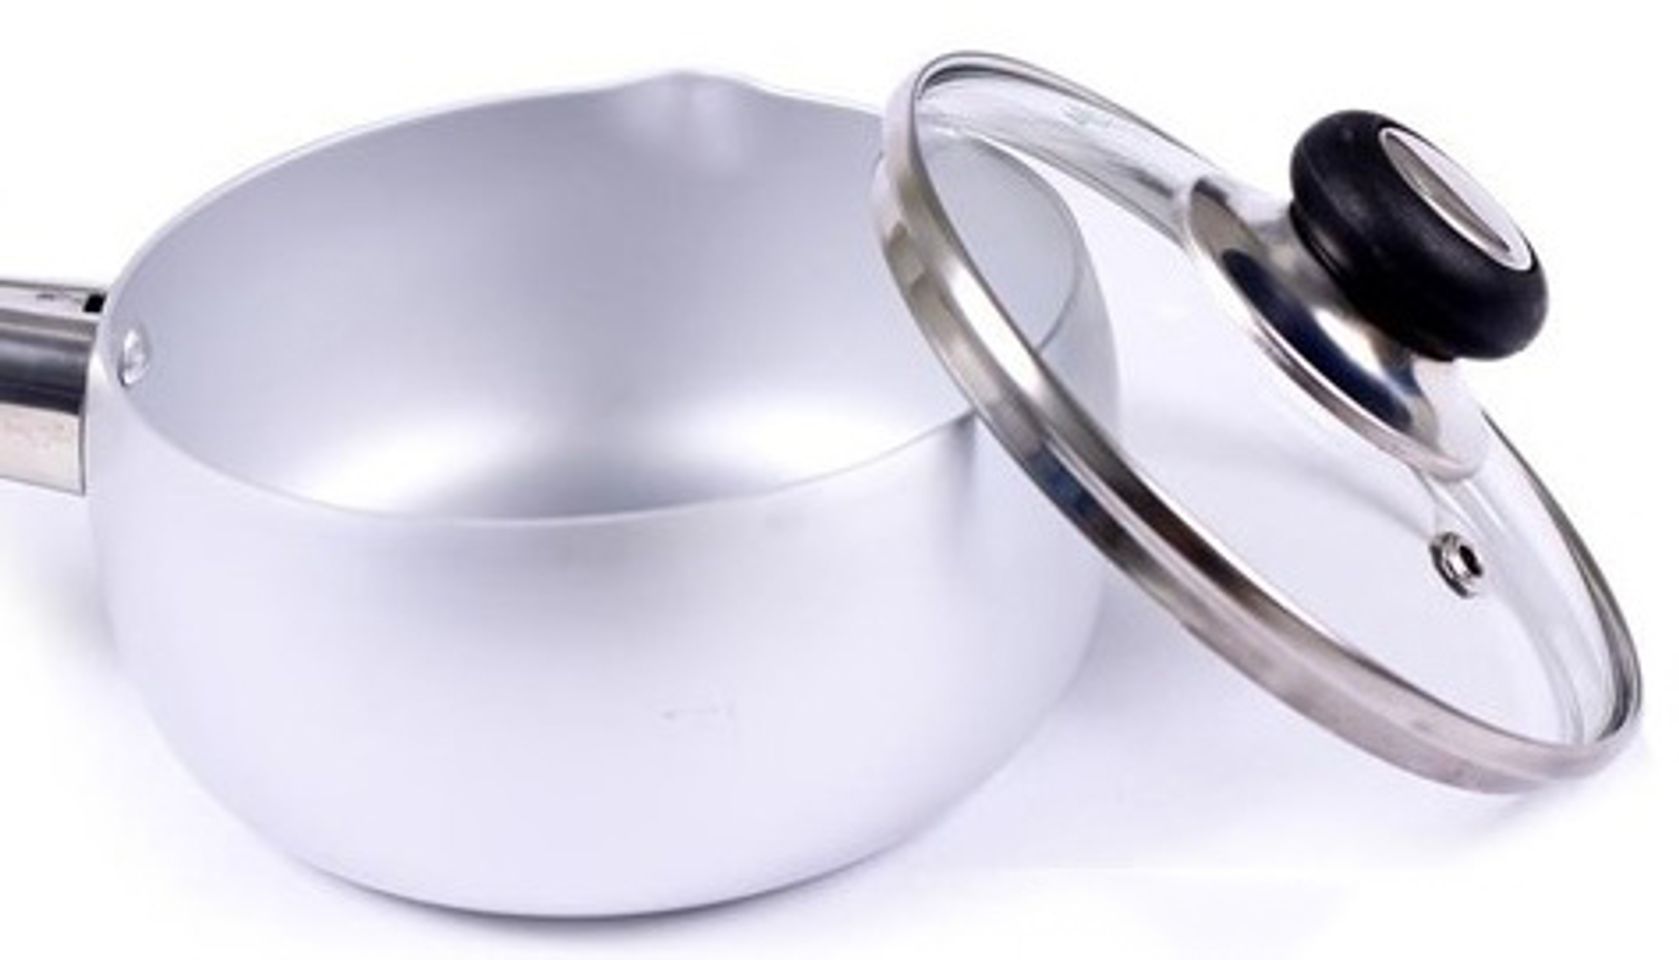 Nắp nồi Supor PS14 bằng kính trong suốt giúp bạn có thể quan sát trong suốt quá trình nấu nướng